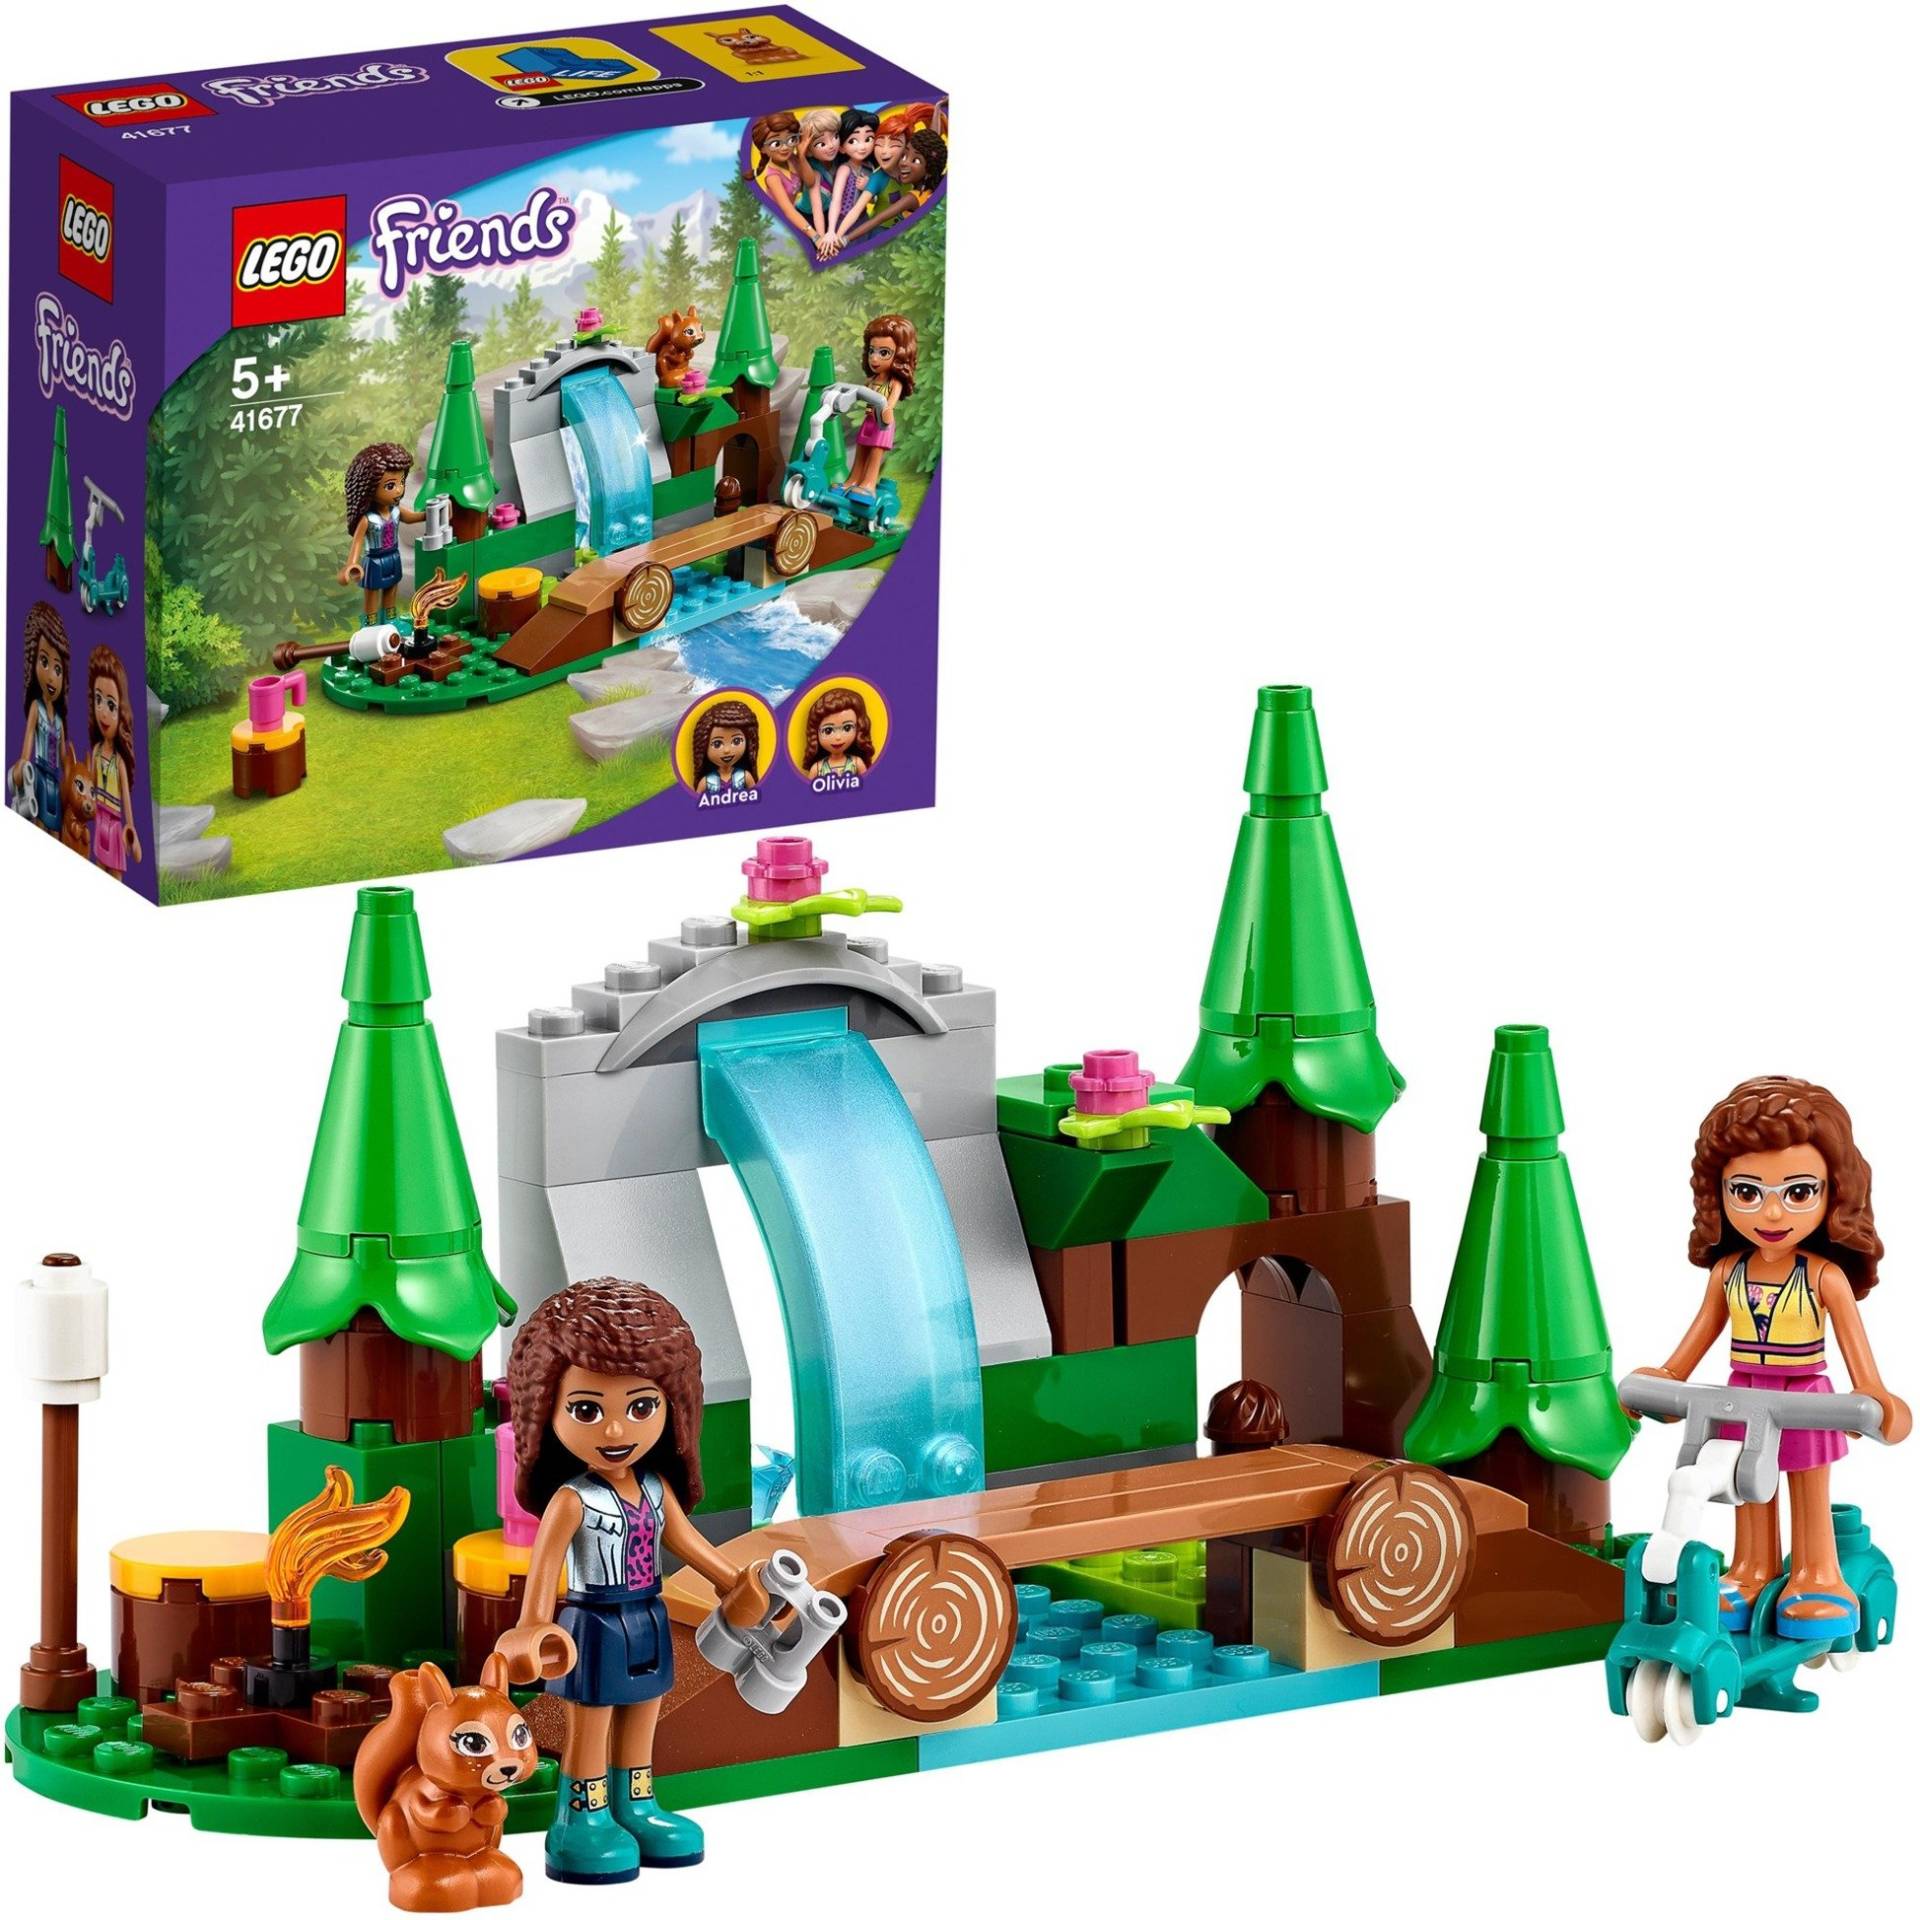 41677 Friends Wasserfall im Wald, Konstruktionsspielzeug von Lego